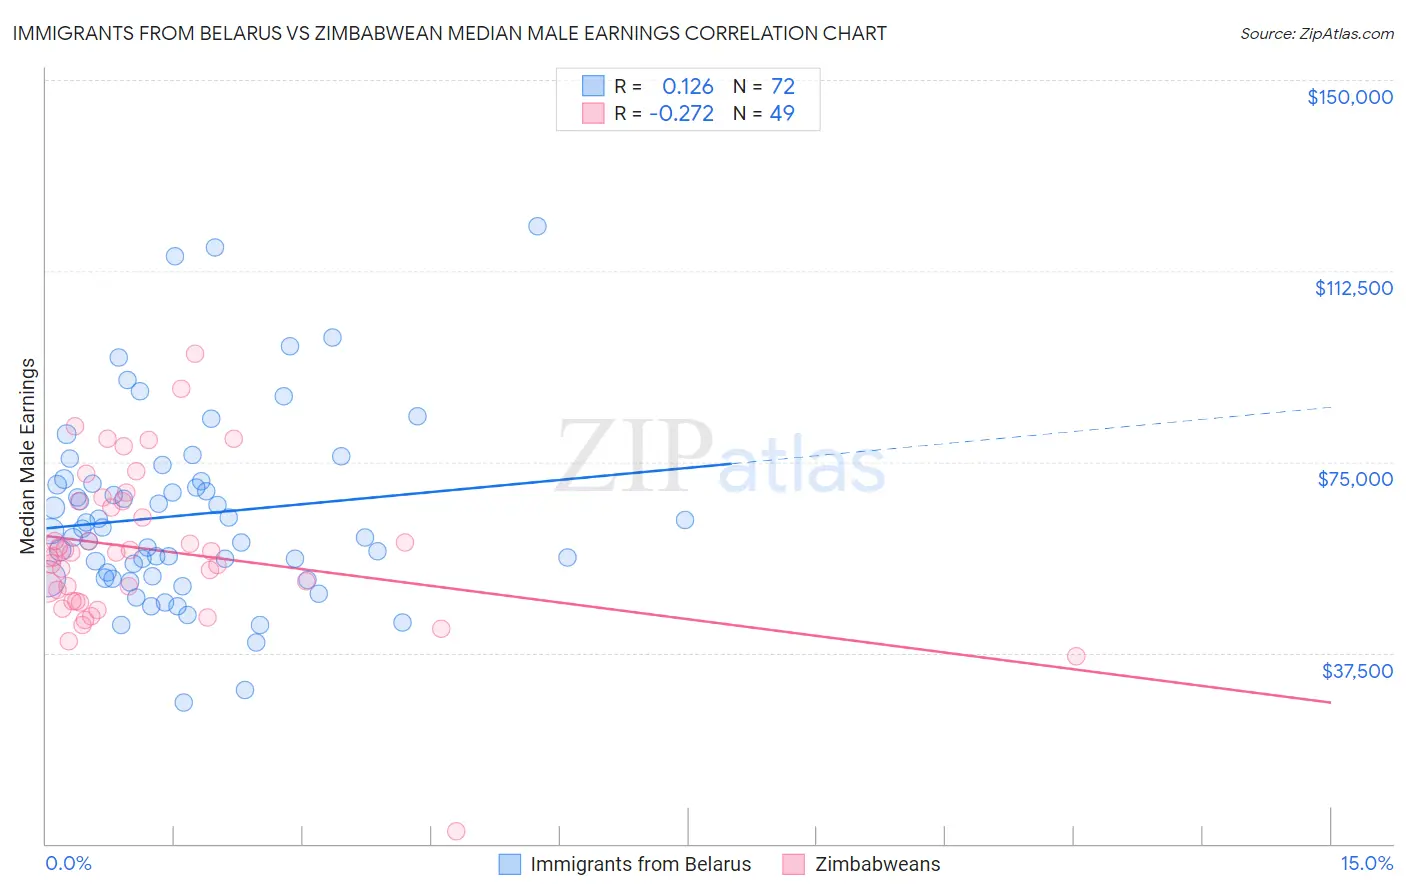 Immigrants from Belarus vs Zimbabwean Median Male Earnings